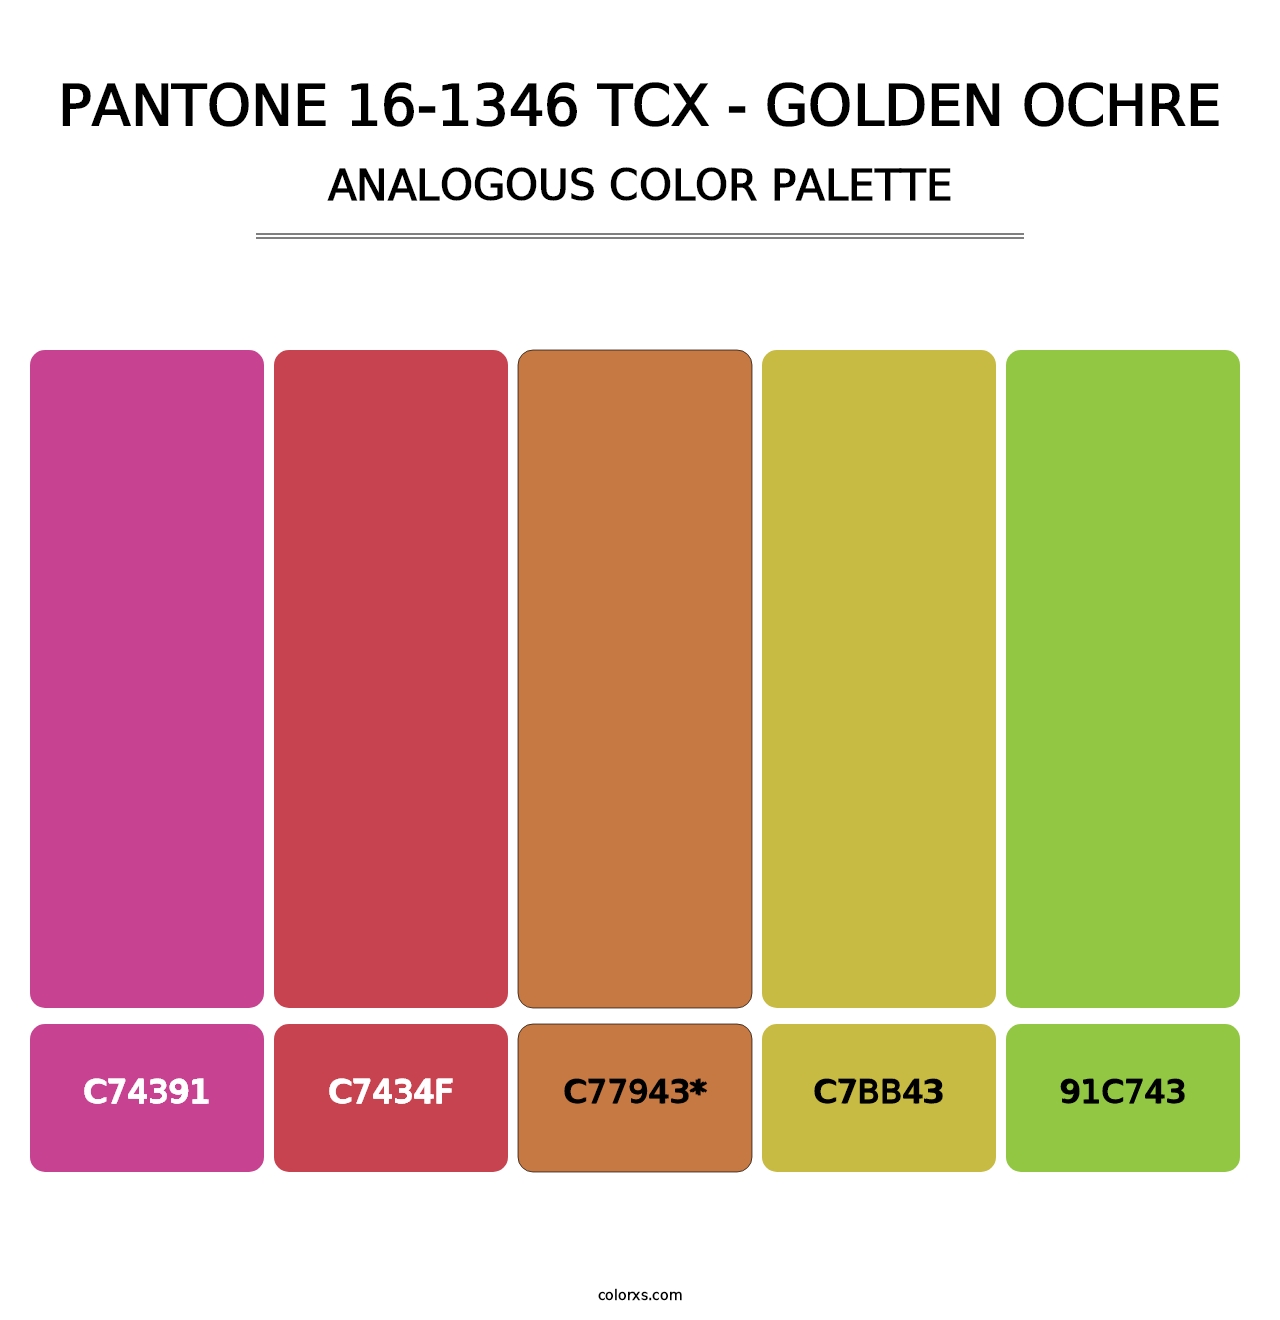 PANTONE 16-1346 TCX - Golden Ochre - Analogous Color Palette